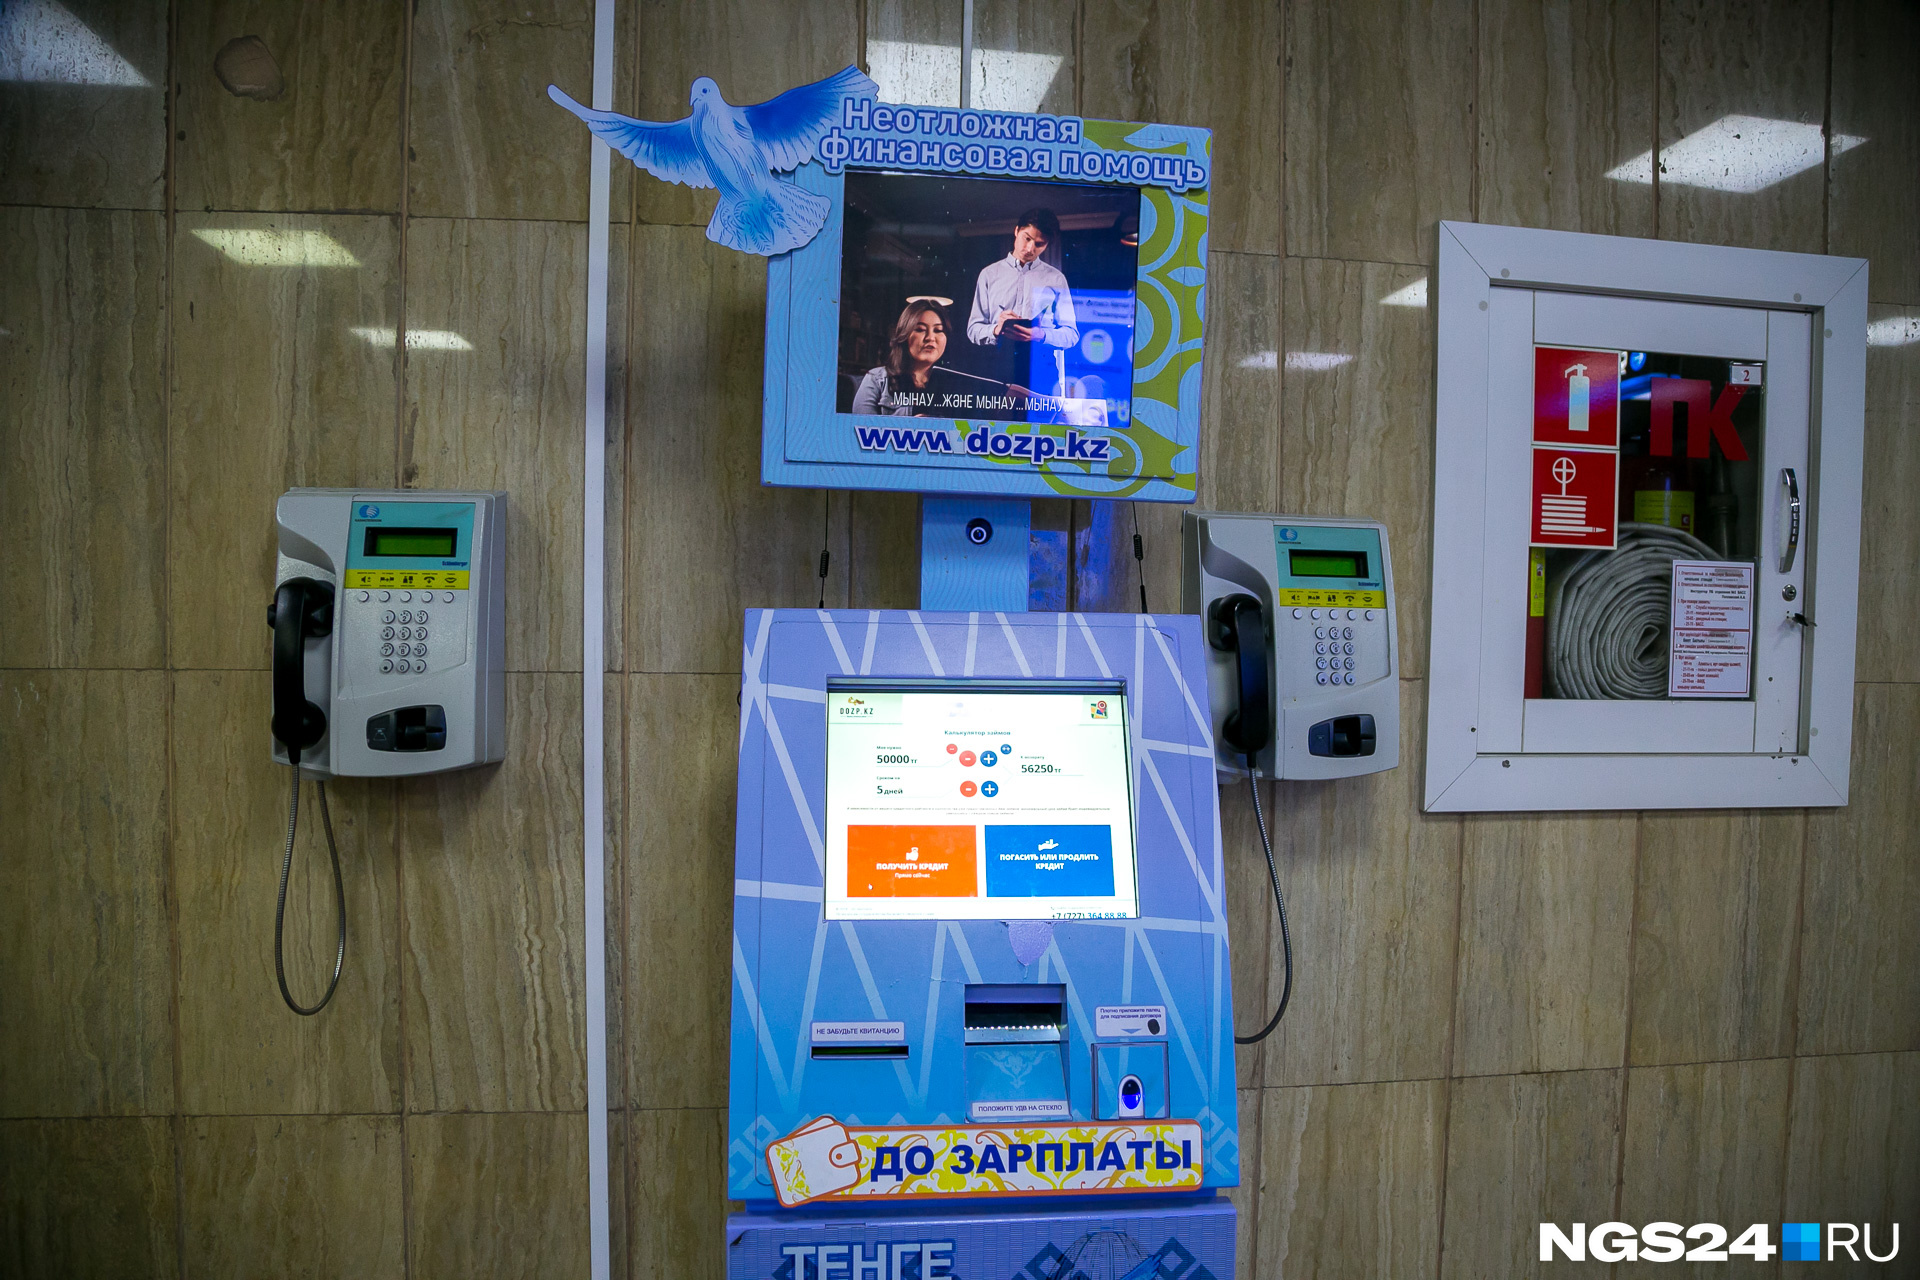 и наличие автоматов для выдачи кредитов «до зарплаты», вместо уже надоевших в Красноярске на каждом углу точек.